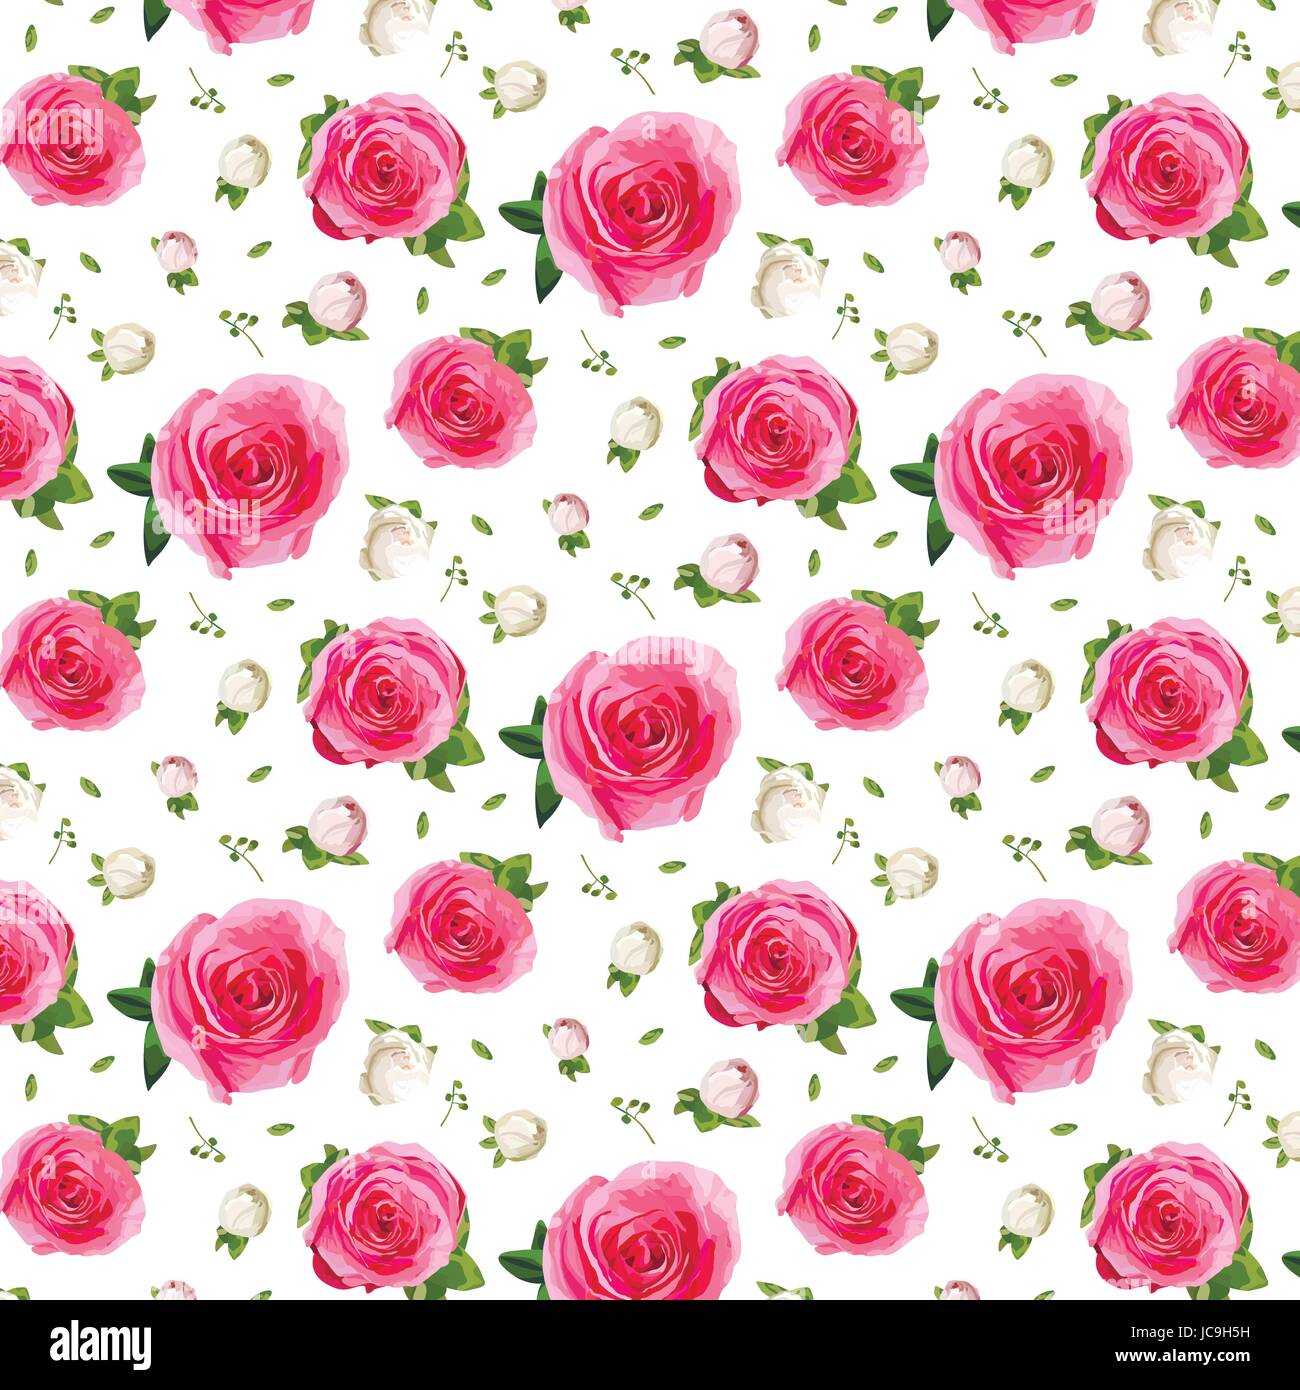 Vintage Rosa Garten stieg Tasten und Rosen Blumen, tausend Farn dekorative Pflanzen, Blätter, Strauß Musterdesign Hintergrund, Wallpaper, botanica Stock Vektor